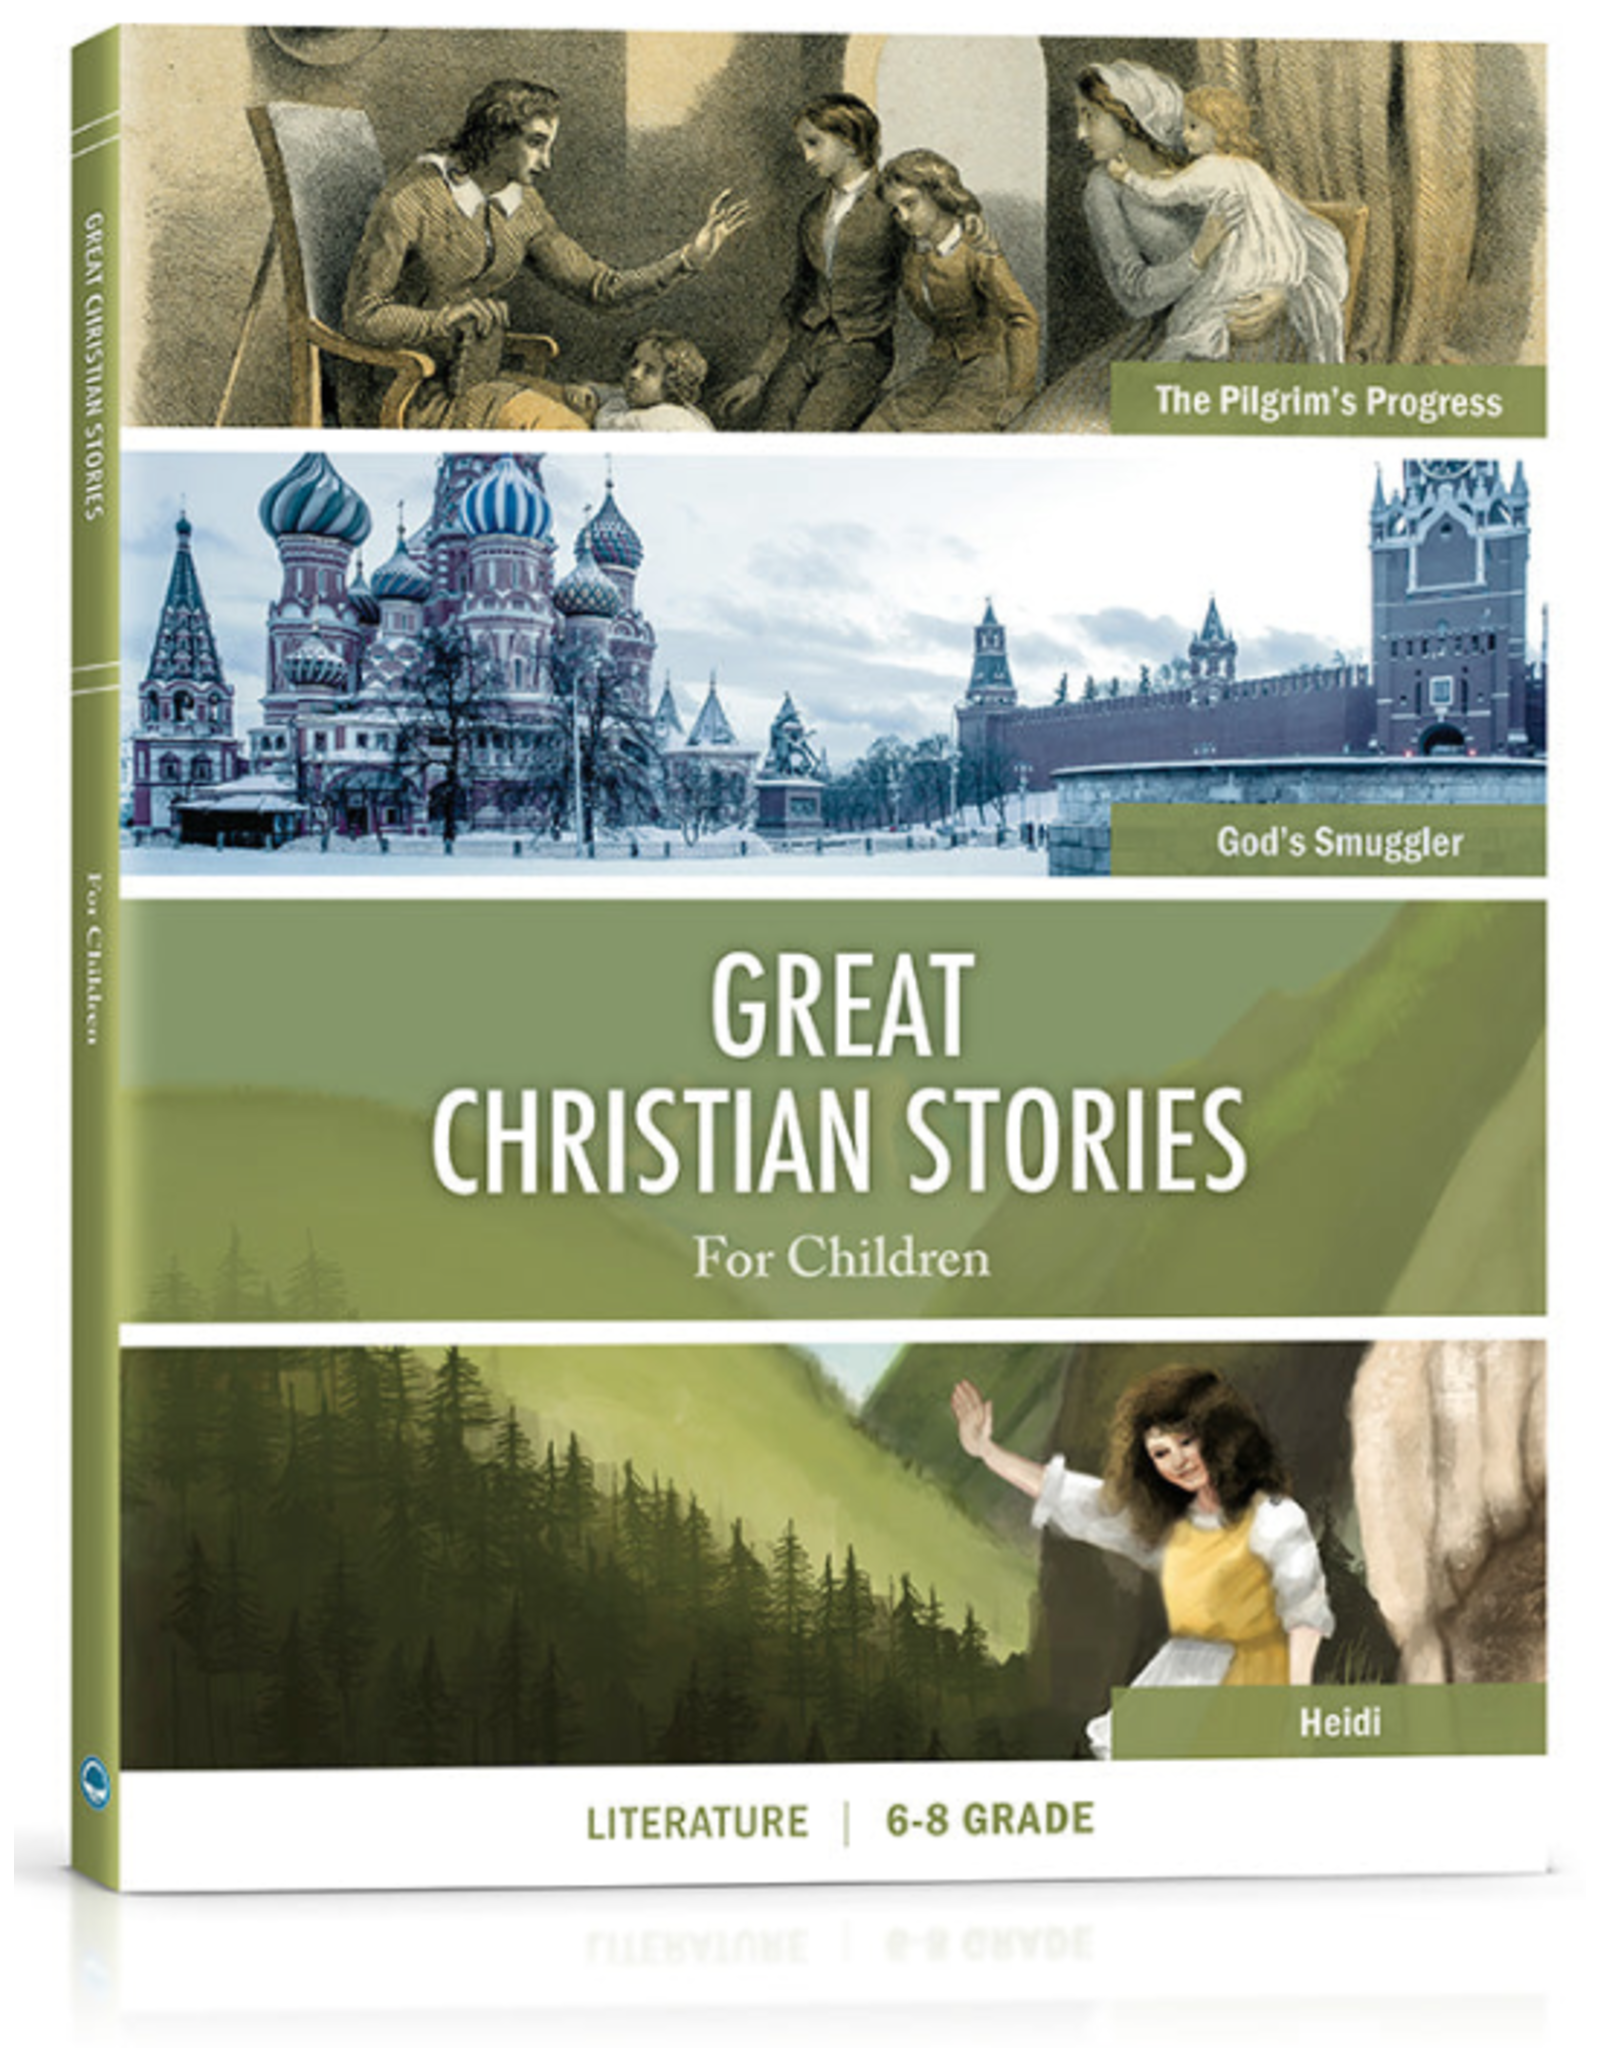 Great Christian Stories For Children - Literature 6-8 Grade Workbook